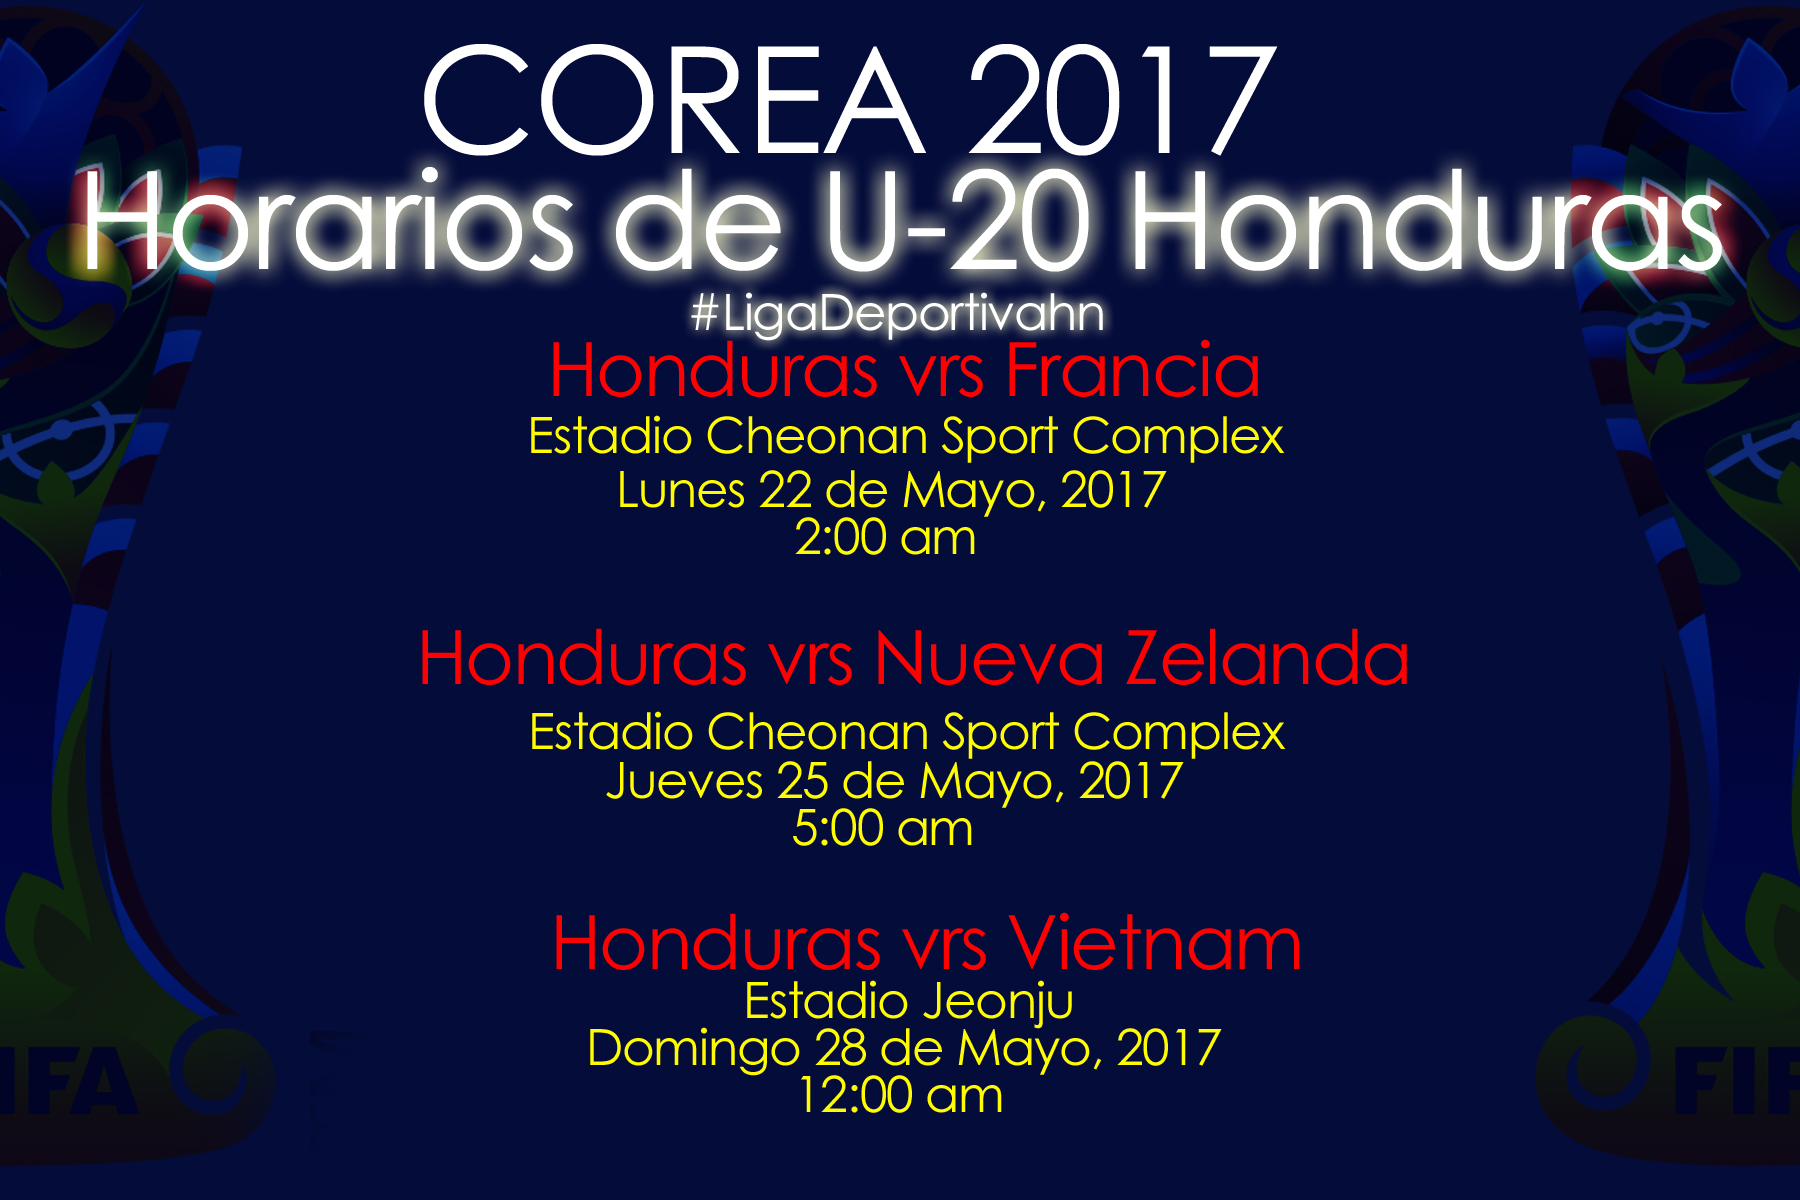 ¡A madrugar! Horarios U-20 Honduras en Mundial de Corea 2017 